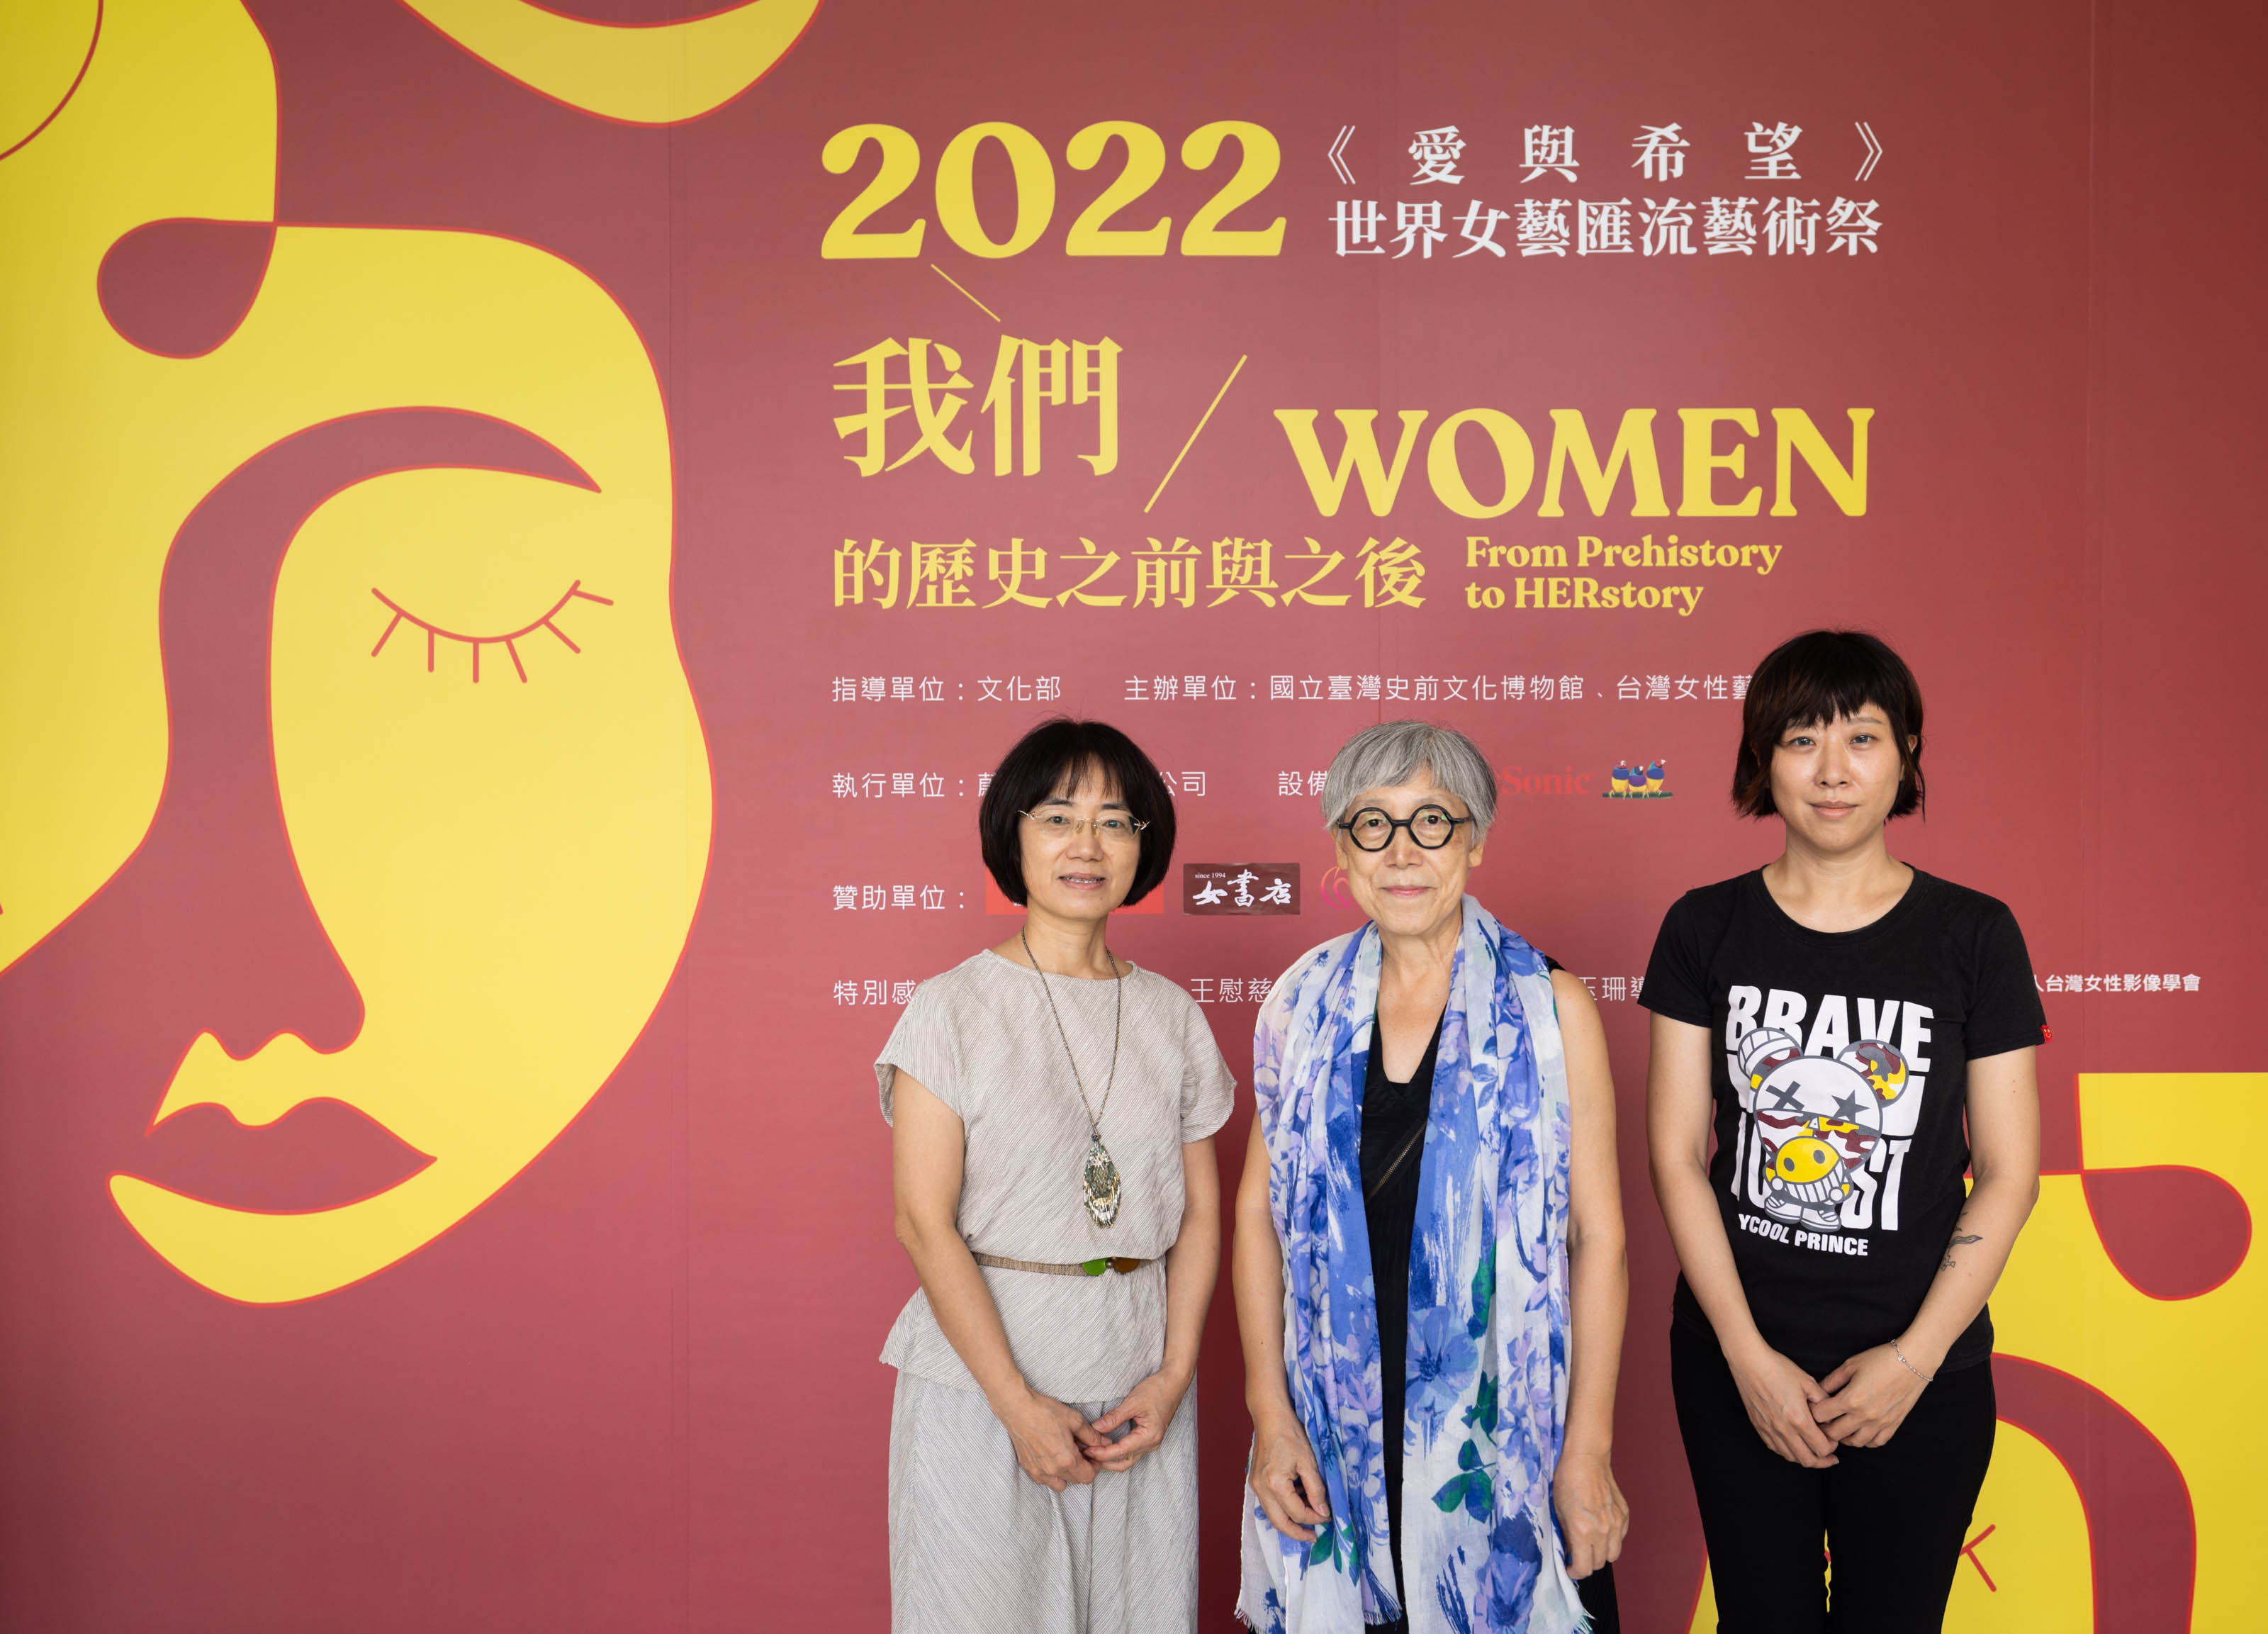 藝術家吳瑪悧(中)、藝術家陳珠櫻(左)、藝術家陳依純(右)出席開幕典禮，現場更邀請百位女性藝術家共襄盛舉